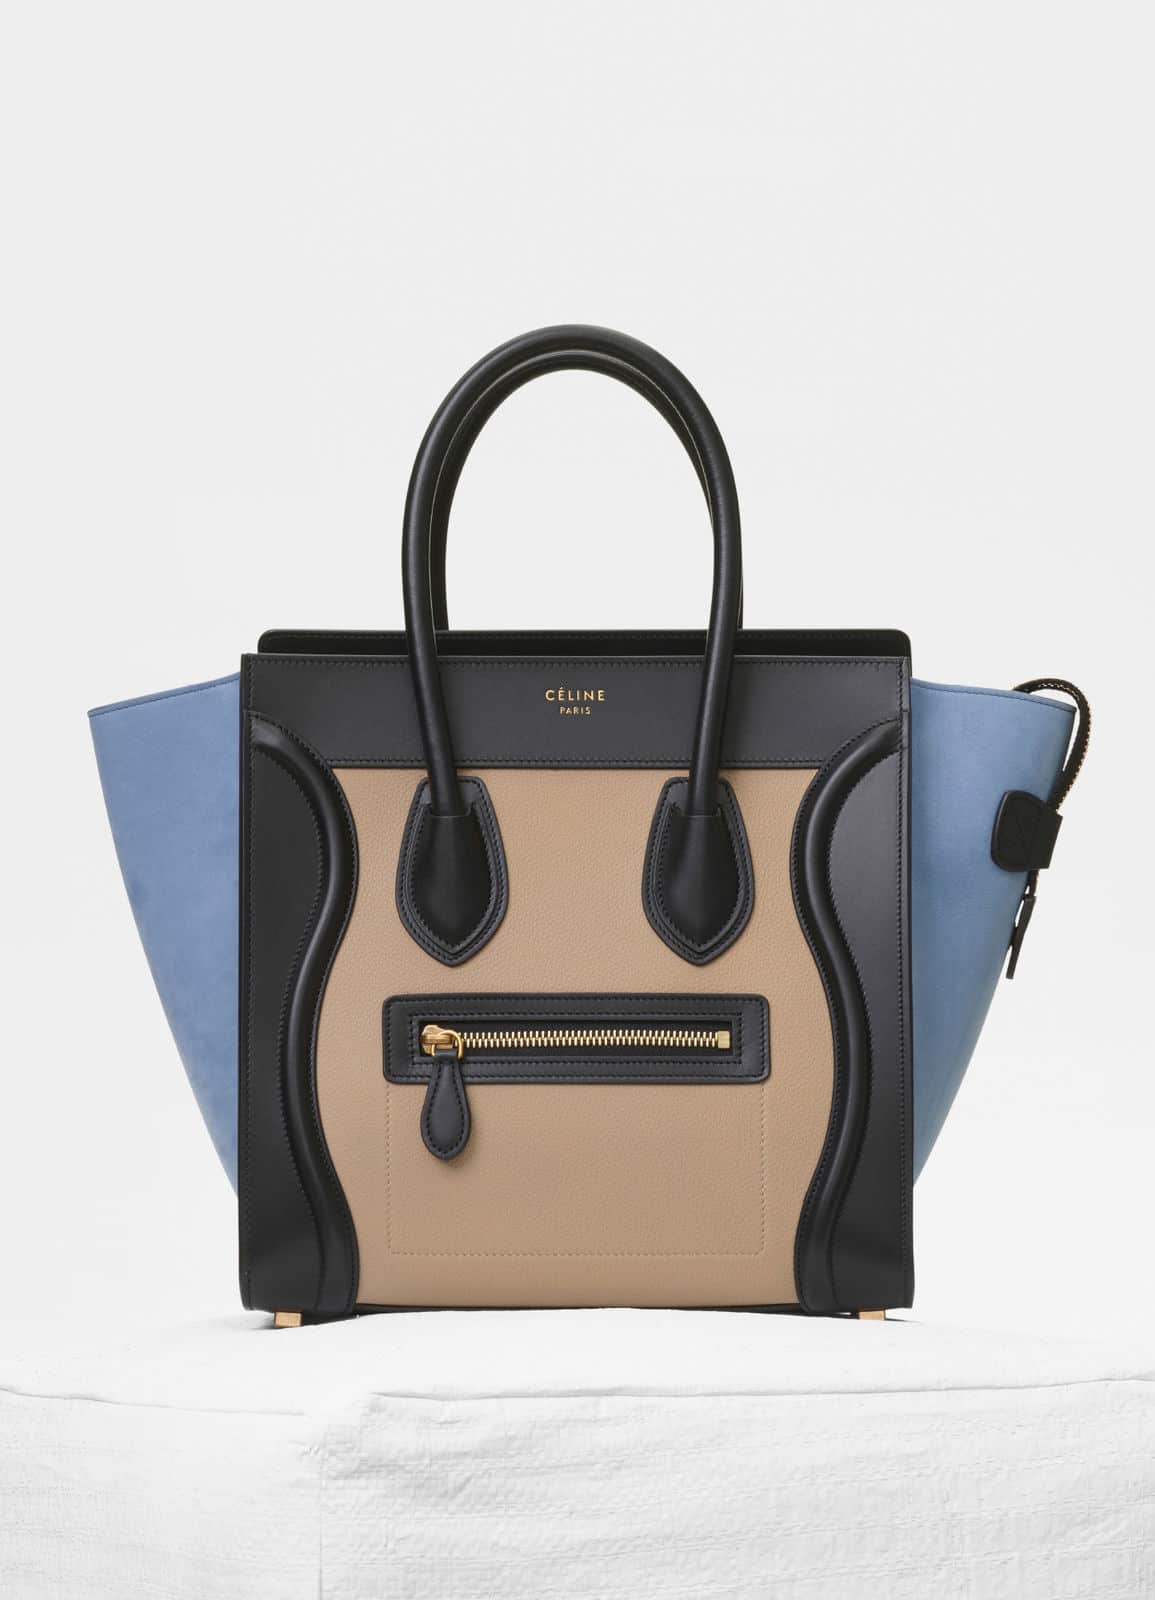 CELINE Tan Leather Boogie Handbag Shoulder Bag Made in Italy CE00/35 | eBay